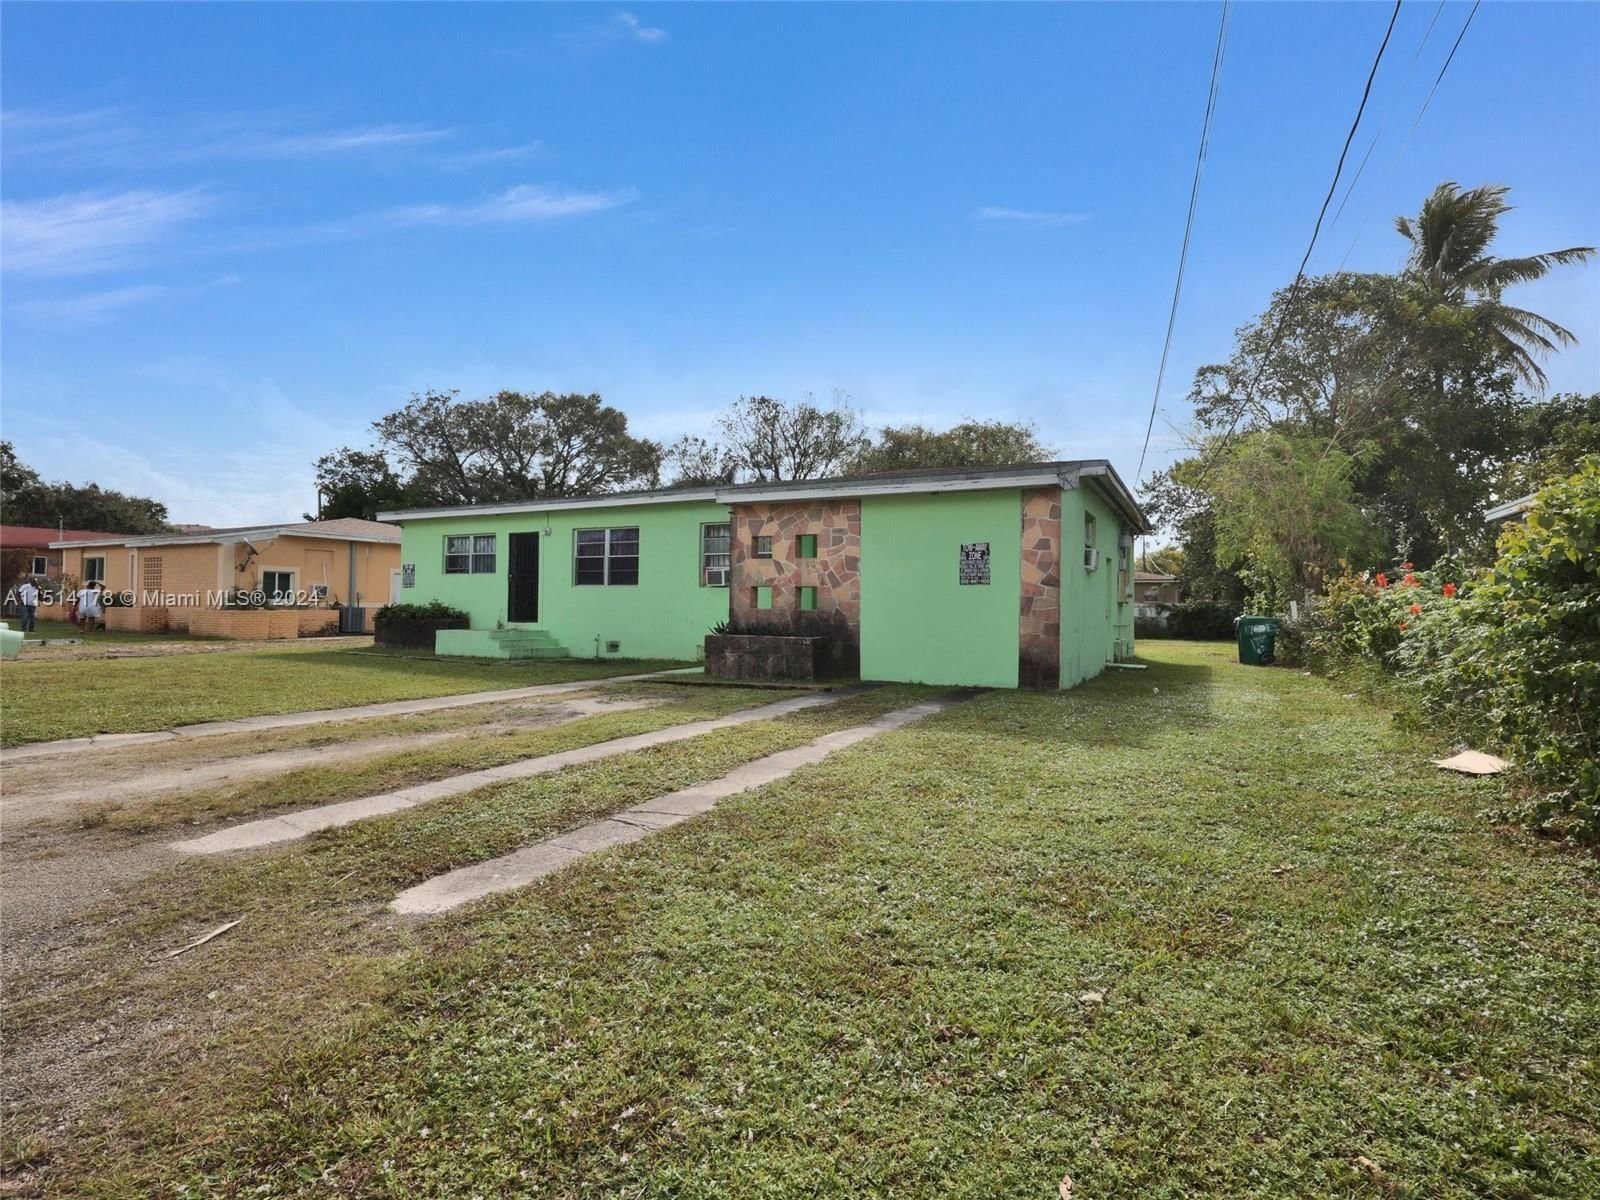 Real estate property located at 1720 148th St, Miami-Dade County, ARCH CREEKS ESTATES, Miami, FL